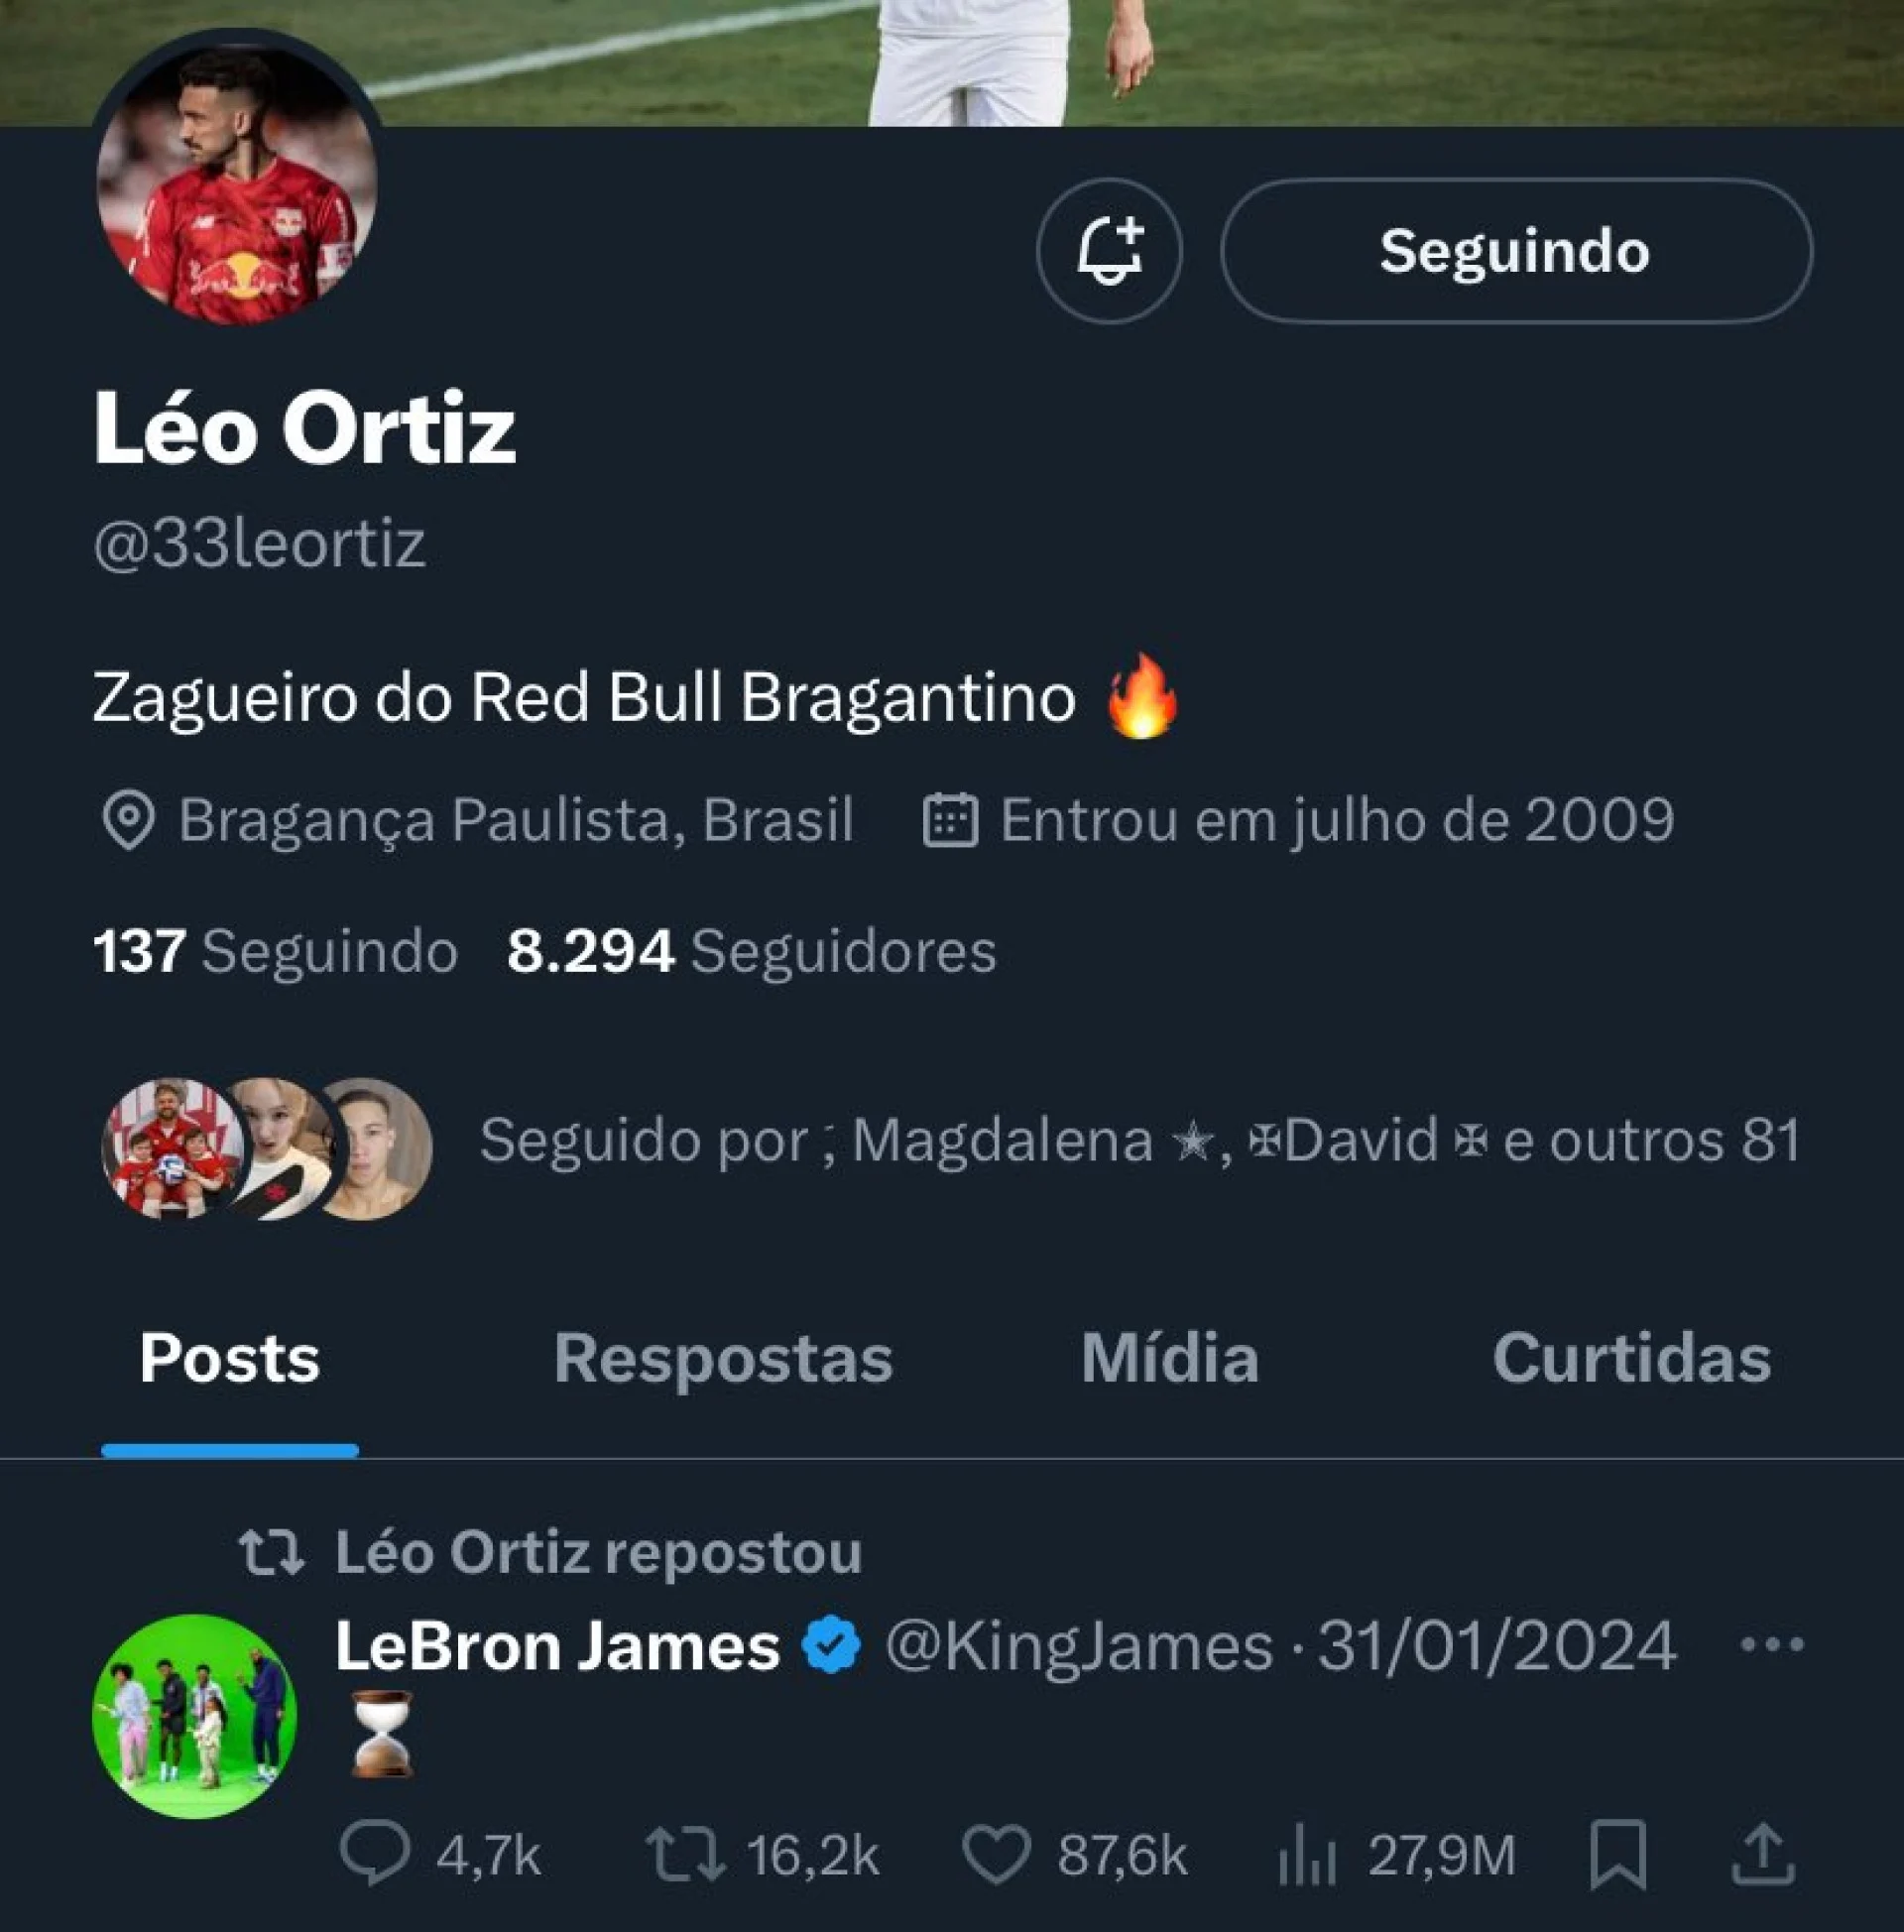 Léo Ortiz aumenta rumores de ida para o Flamengo com mensagem enigmática